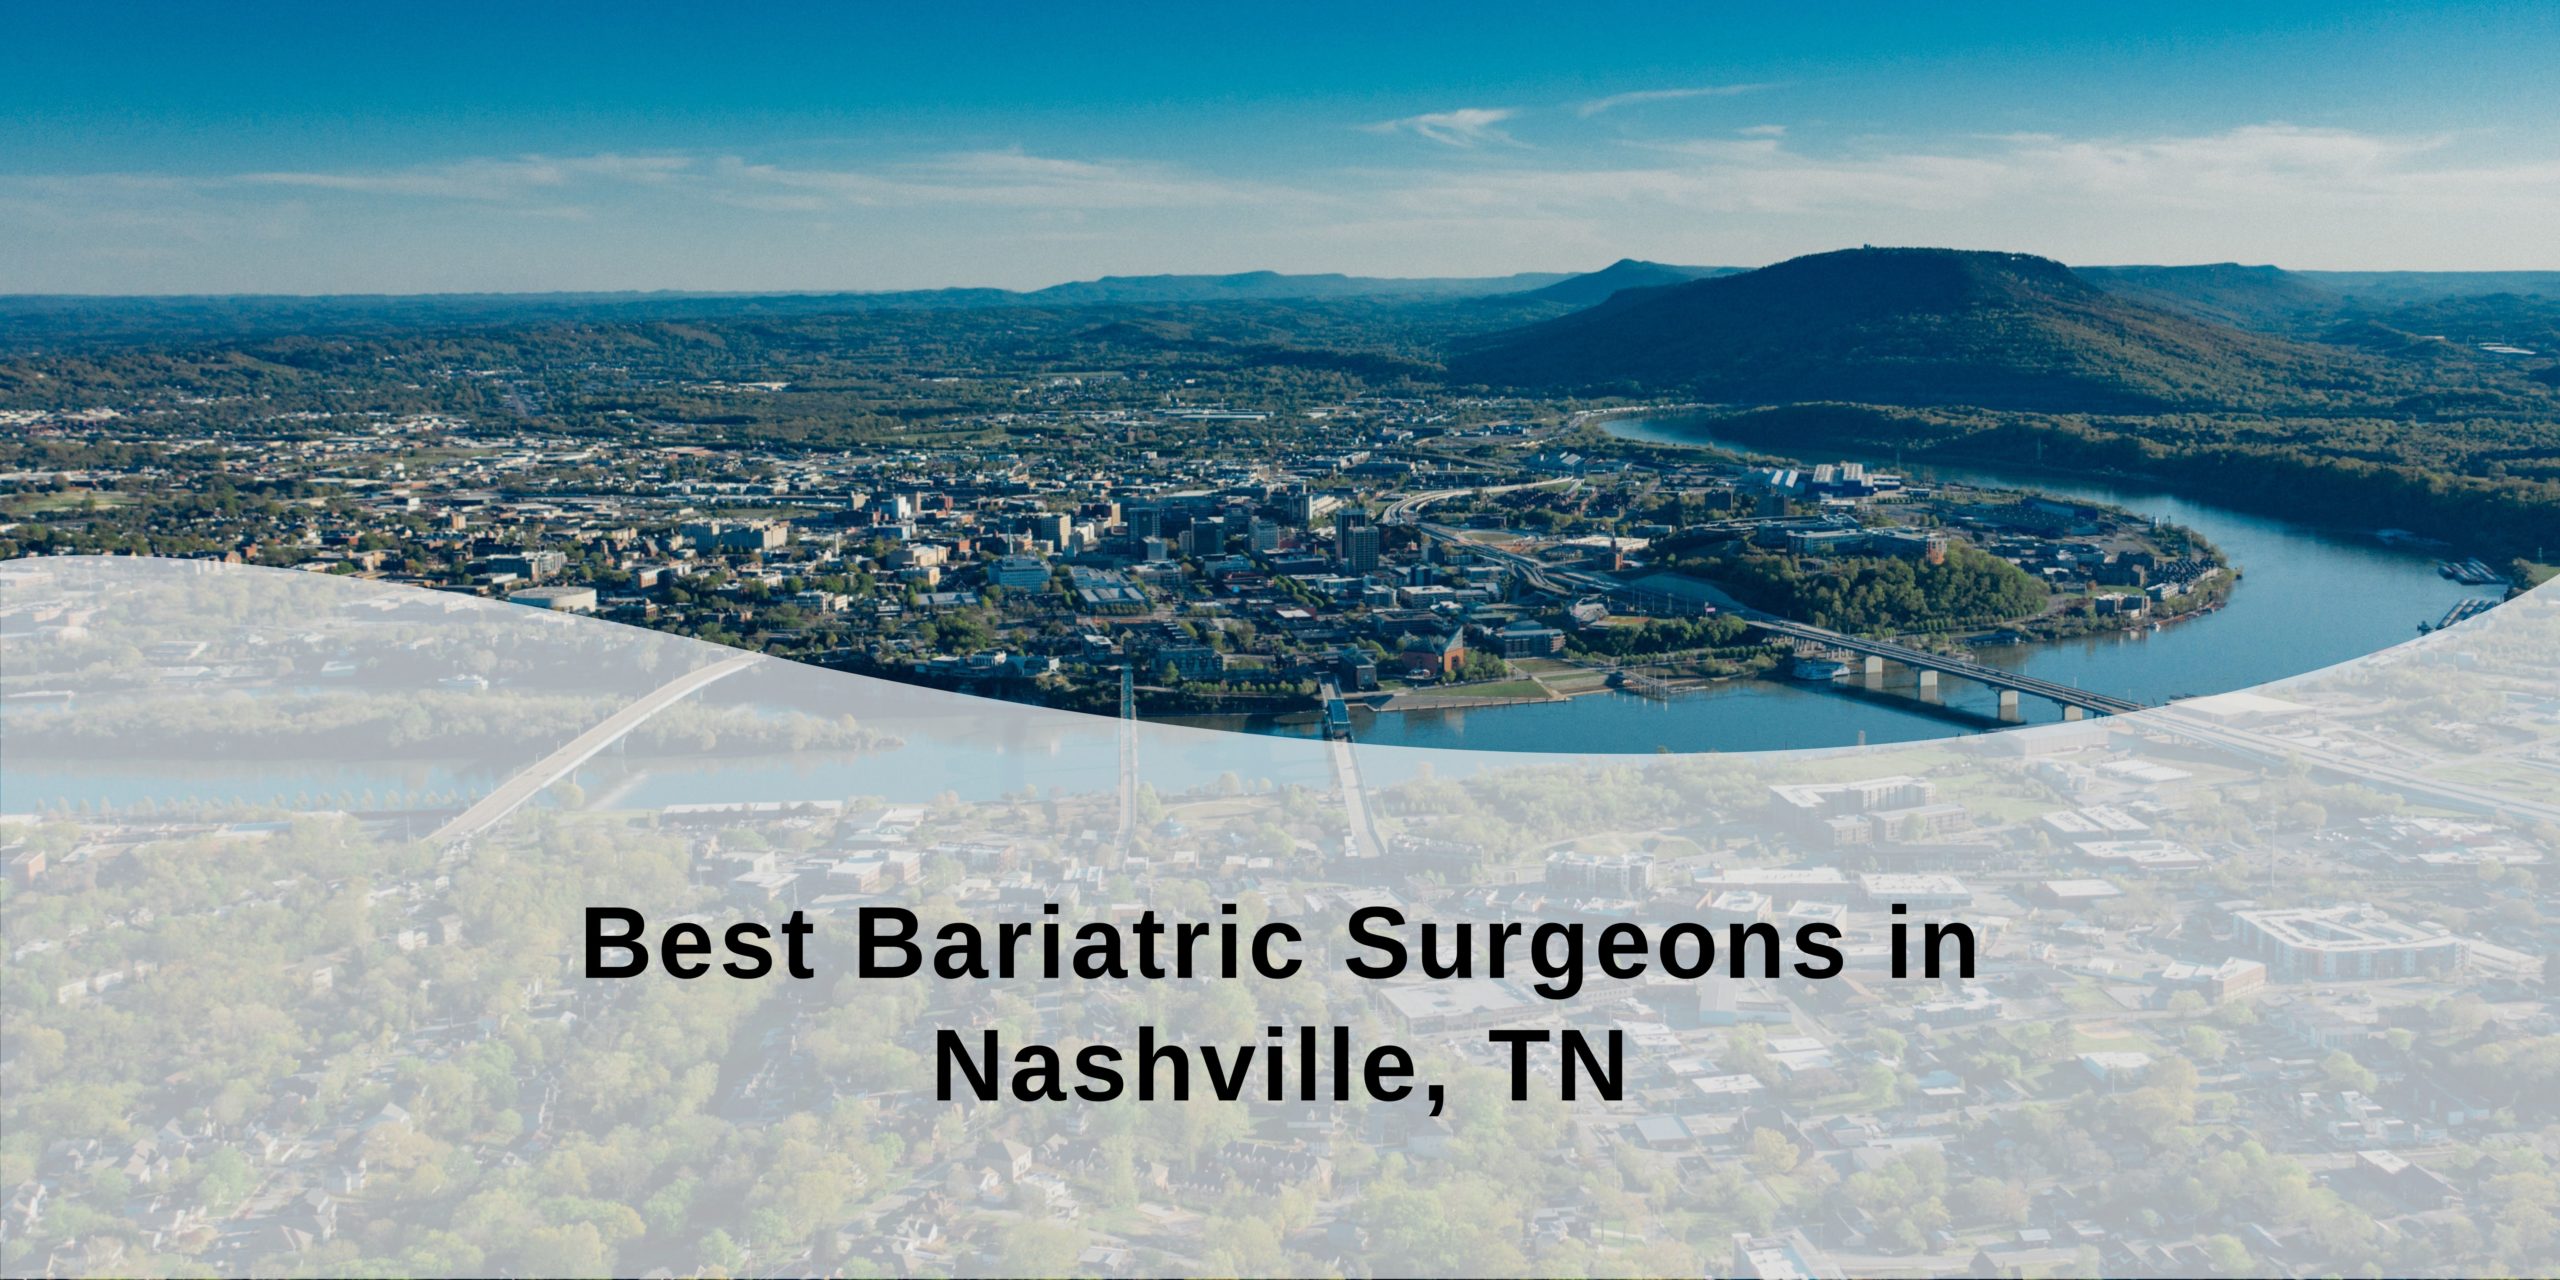 Best Bariatric Surgeons in Nashville, TN